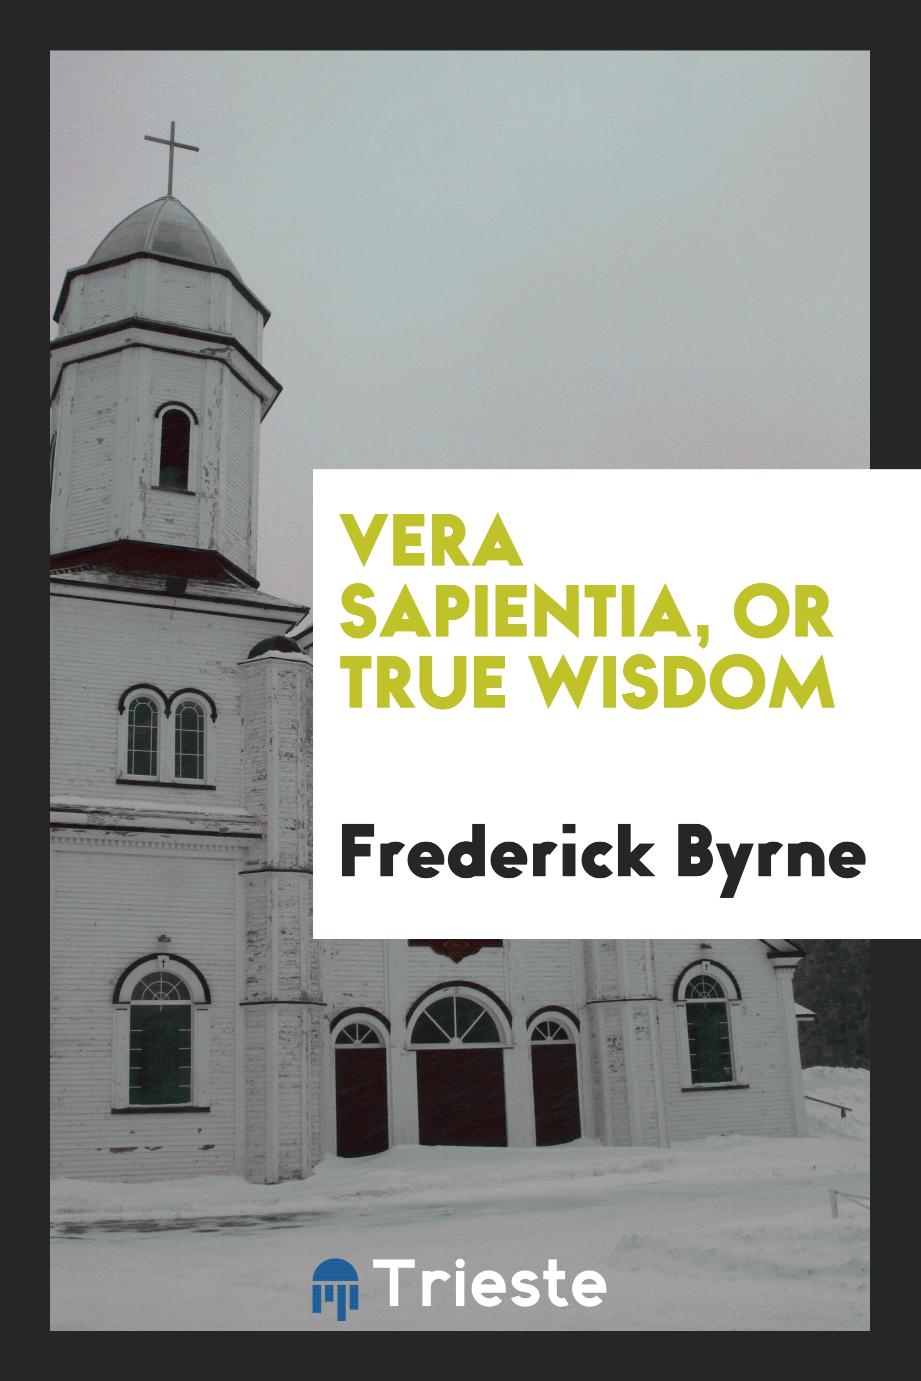 Vera sapientia, or True wisdom